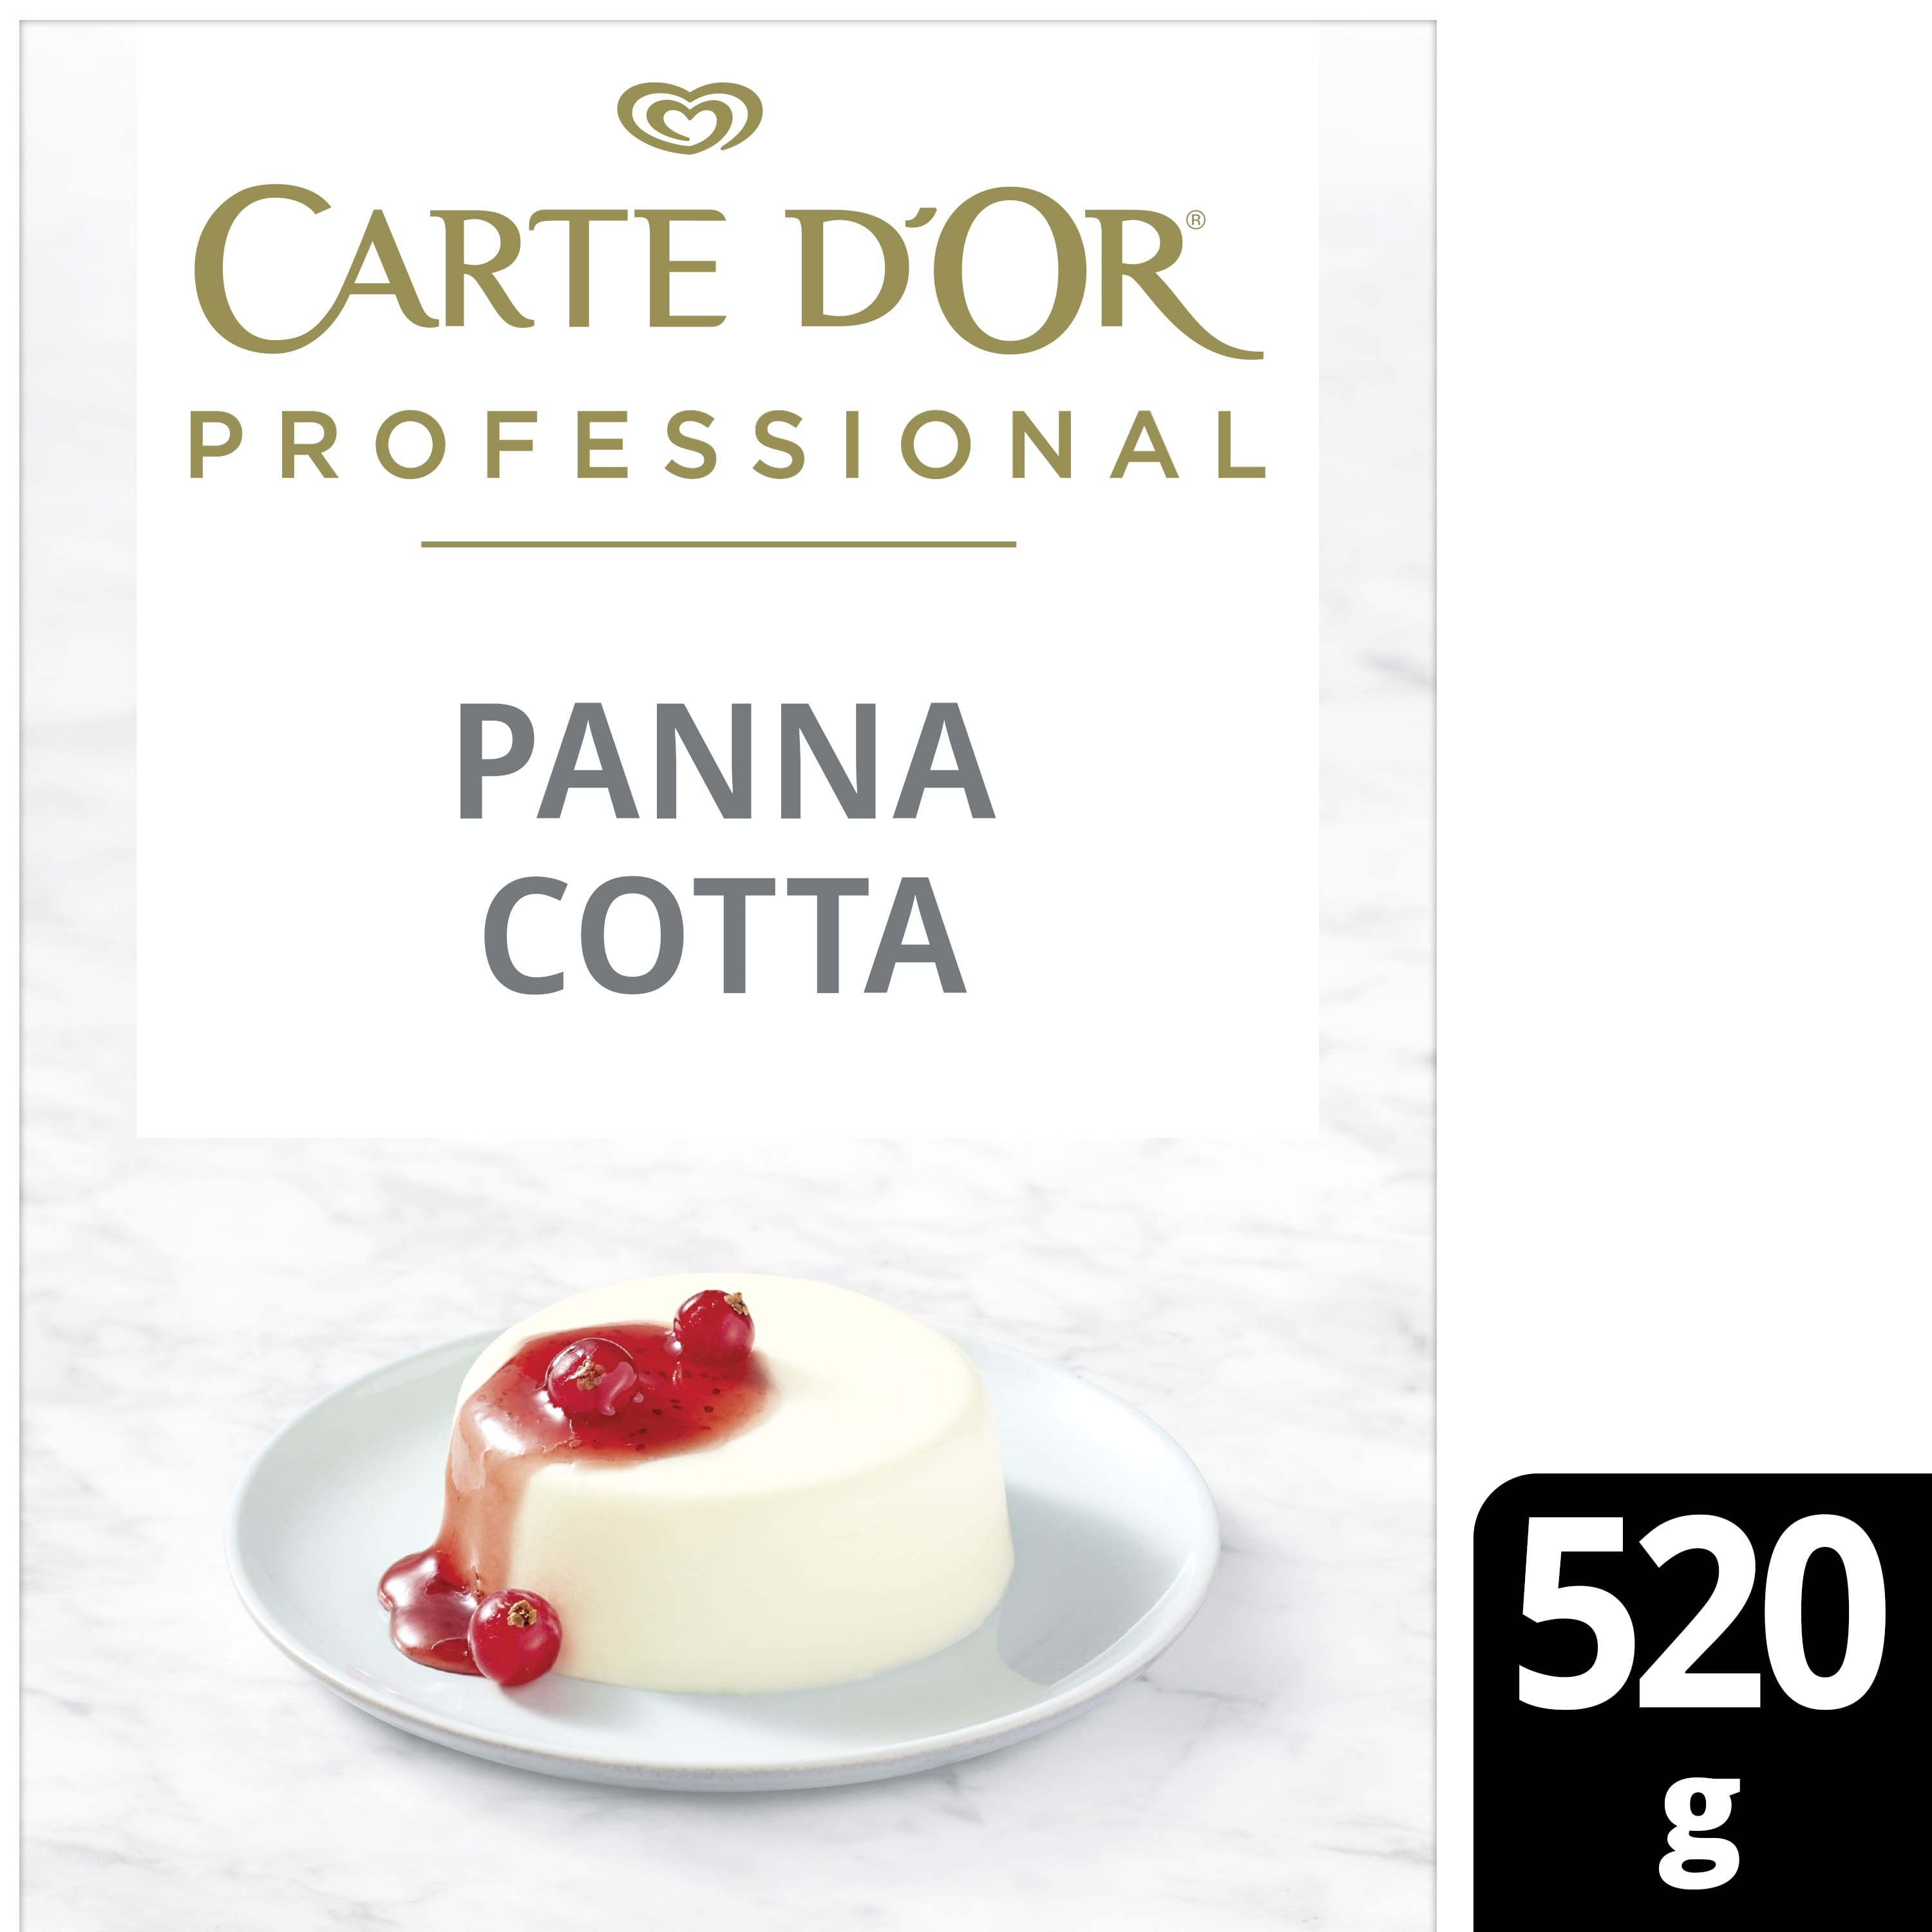 Carte d’Or preparato per Panna Cotta 520 Gr - Per il gusto ed il colore autentici e la consistenza perfetta anche dopo 24 ore, la Panna Cotta Carte d’Or è la numero 1 per gli Chef*. Finalmente senza glutine.